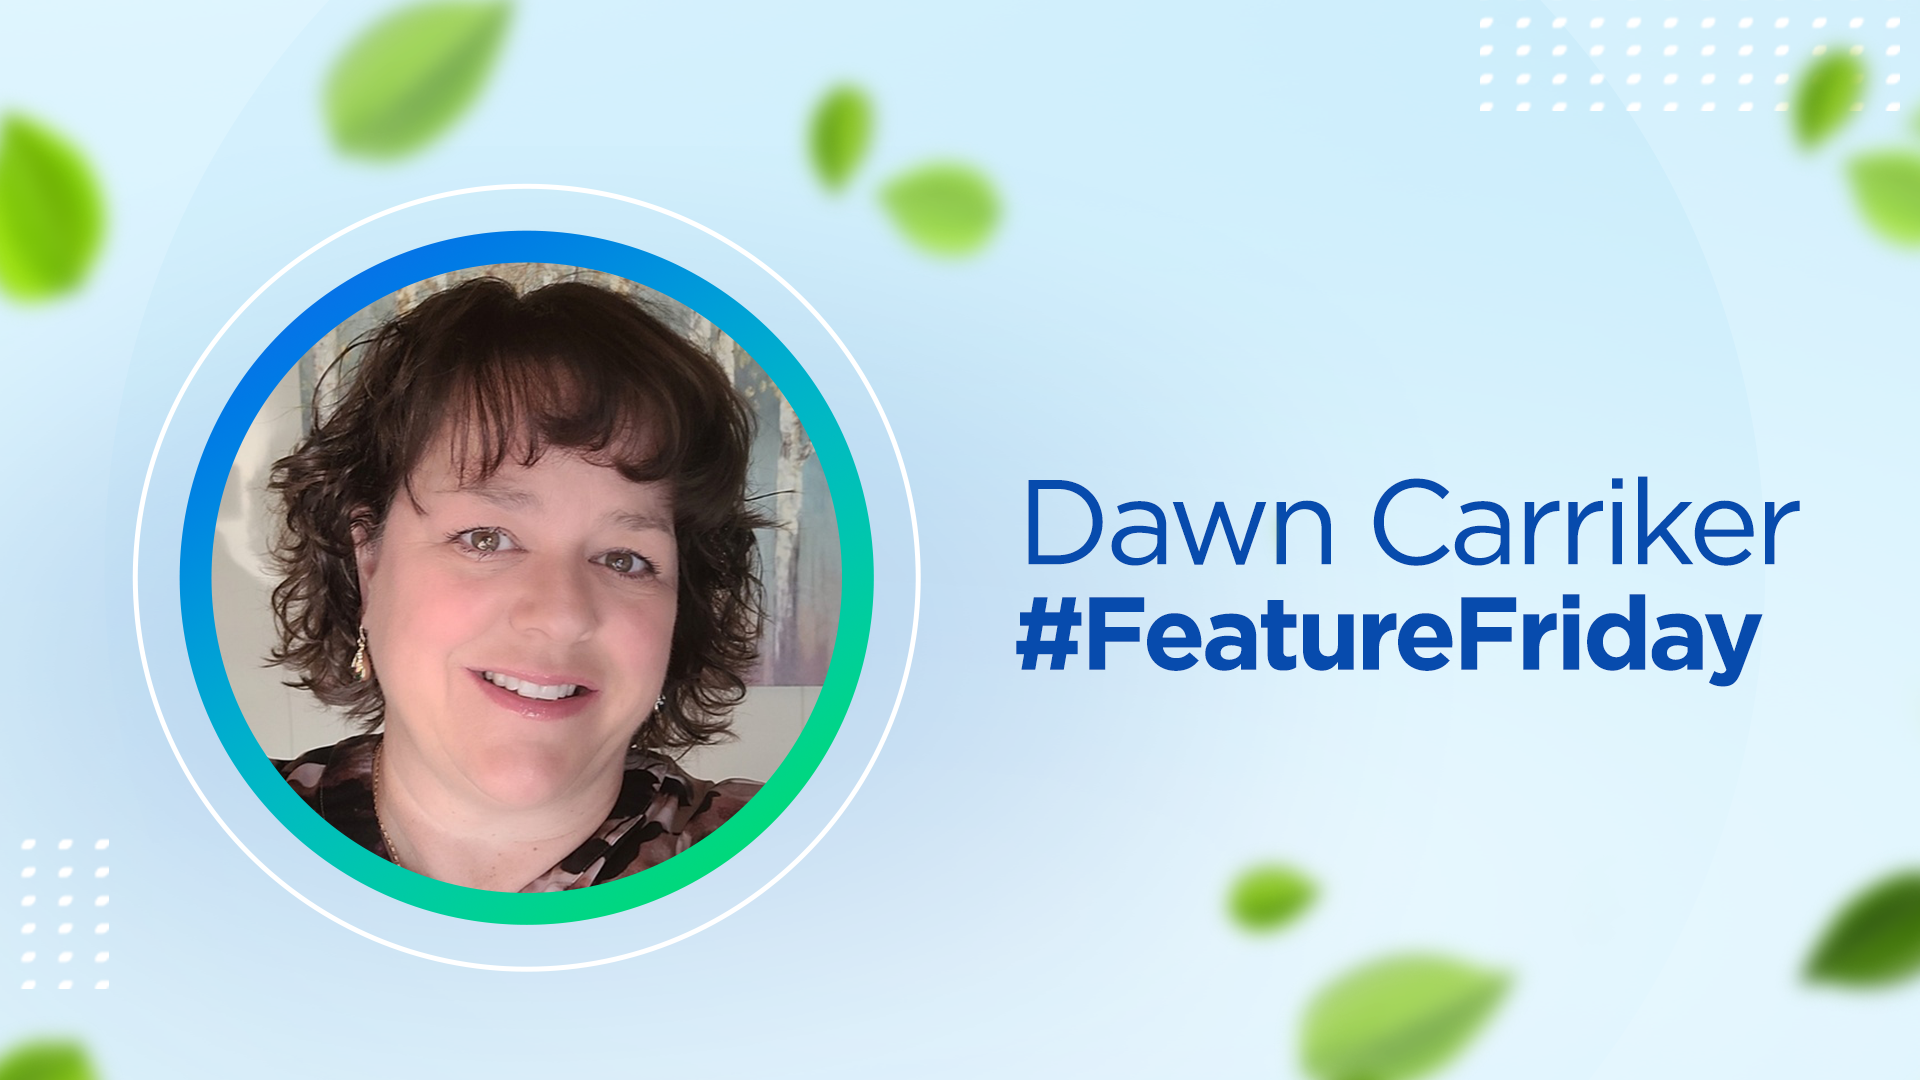 schoolmint customer success manager Dawn Carriker